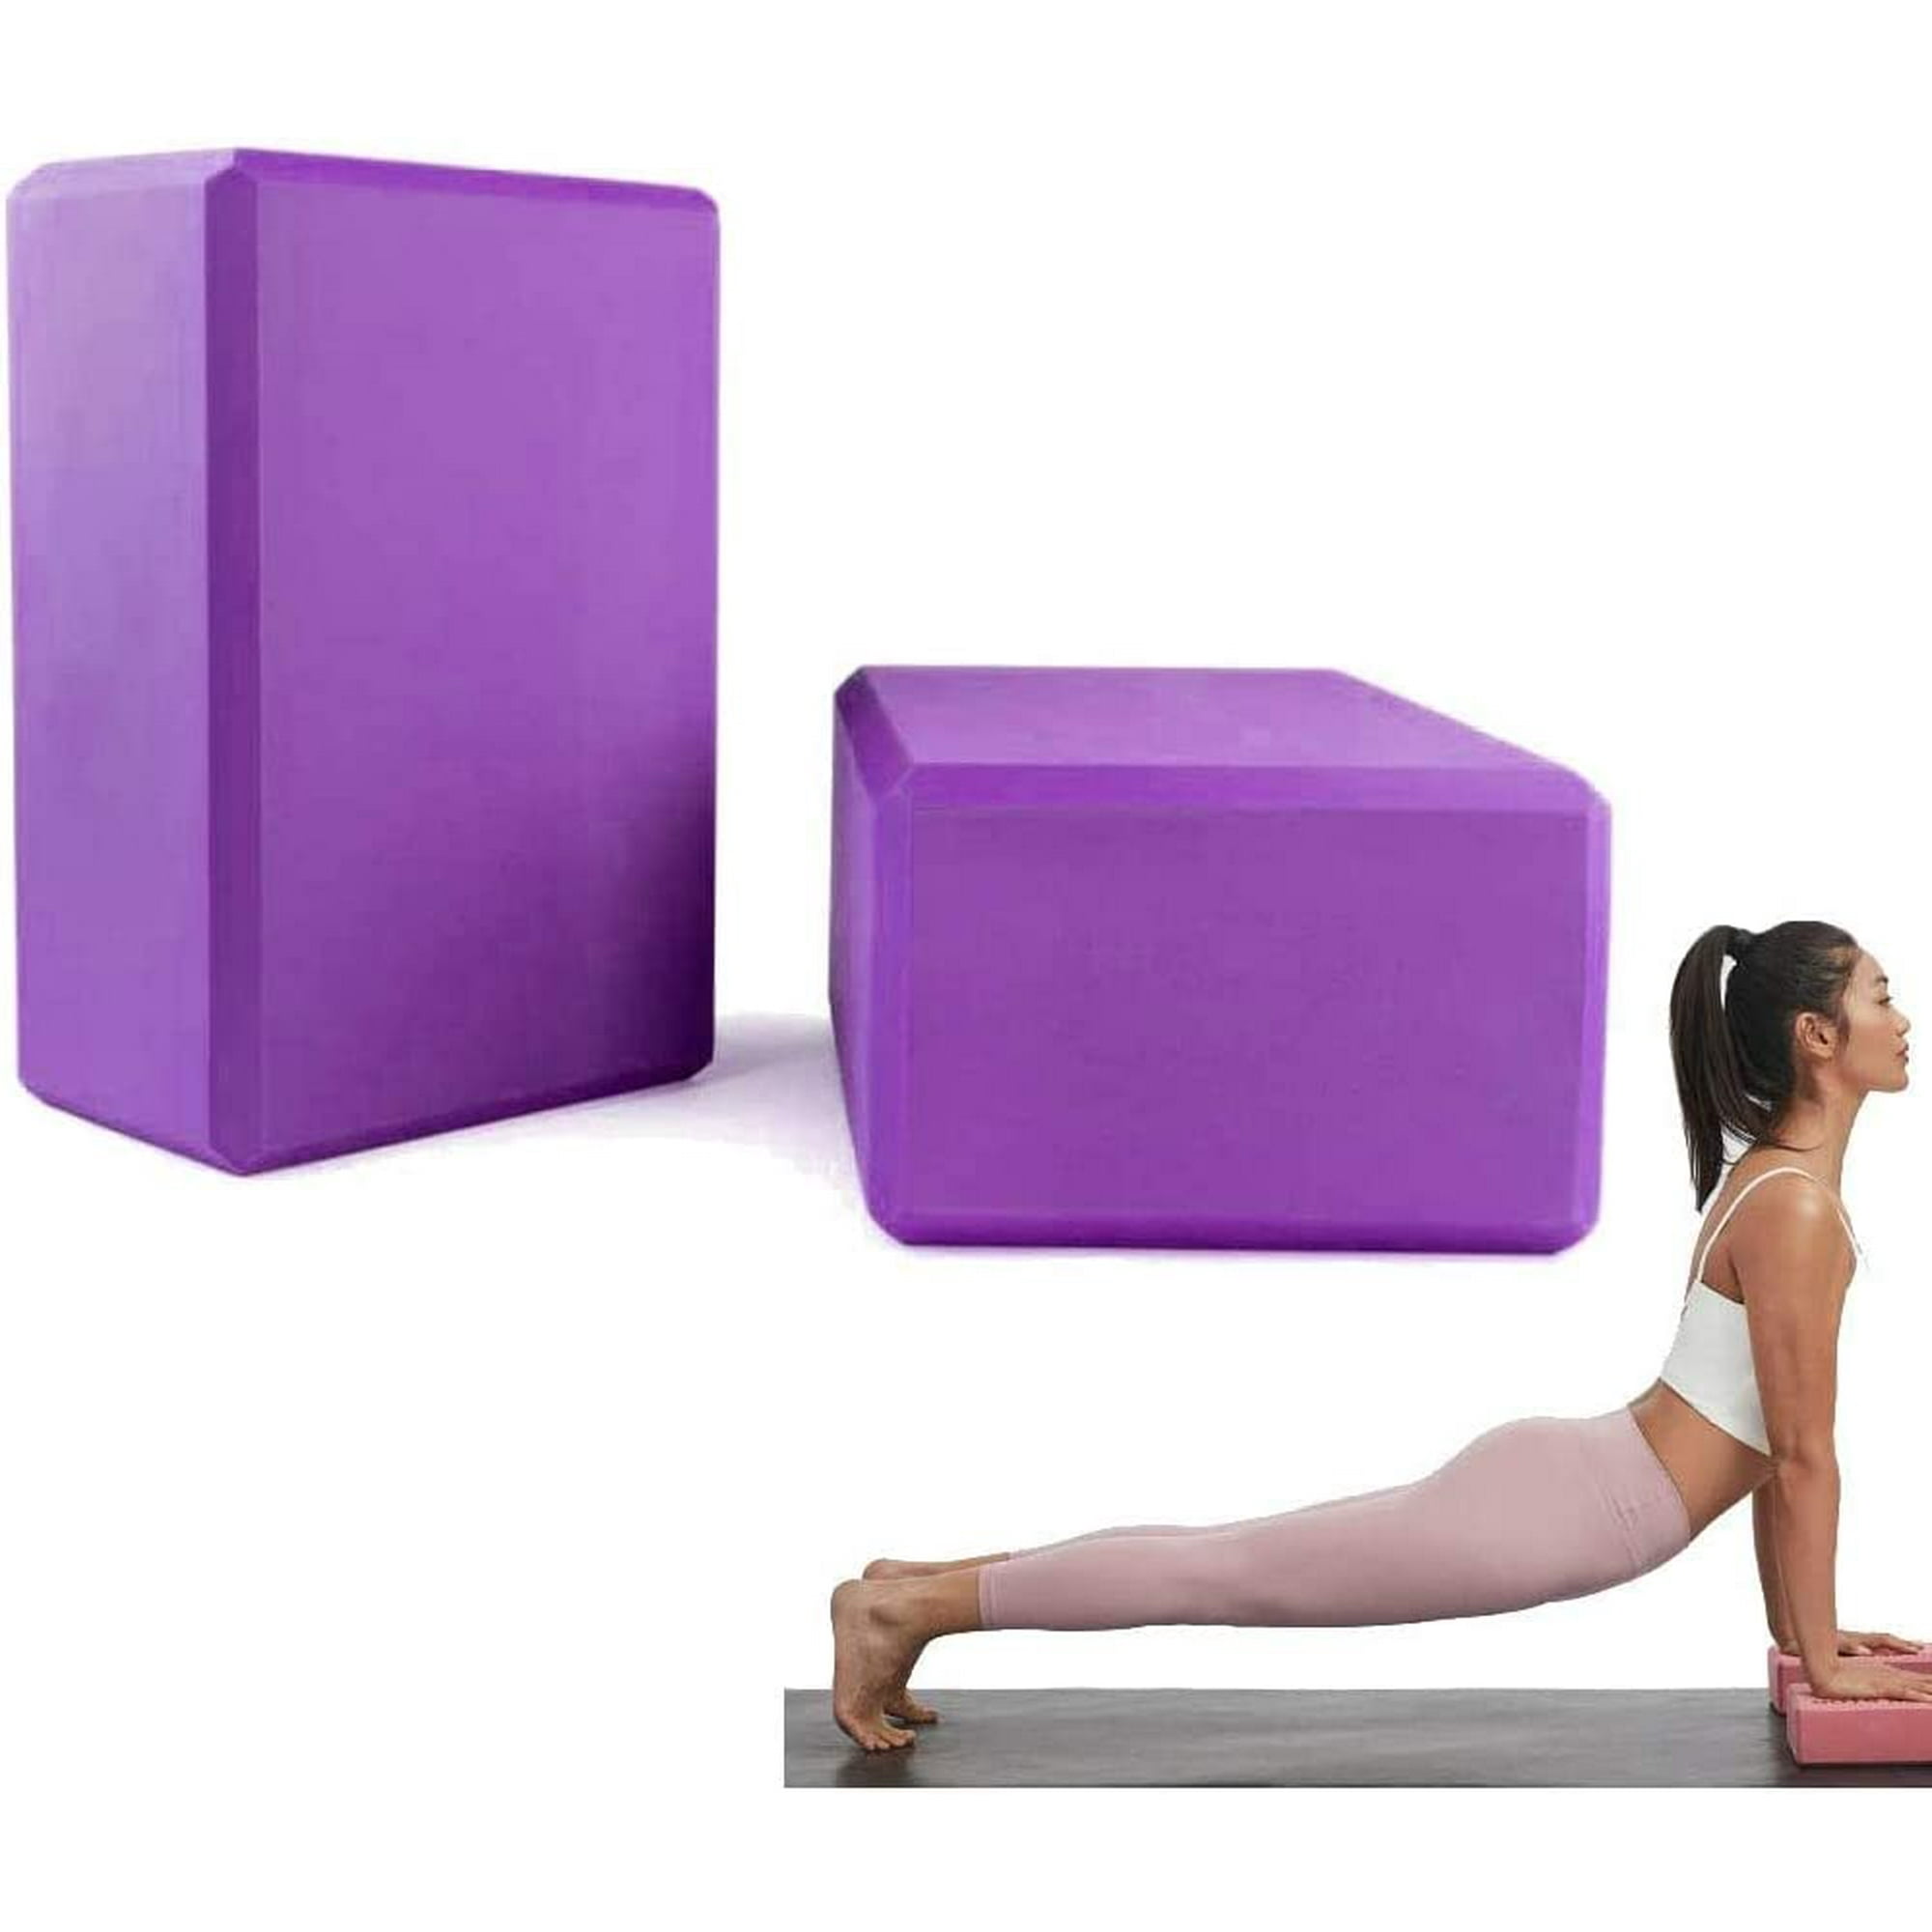  Bloque de yoga, bloques de espuma EVA de alta densidad para yoga,  pilates, meditación, equilibrio de ayuda, apoyo y posturas profundas,  antideslizante, ligero, duradero (paquete de 2 unidades, gris) : Deportes